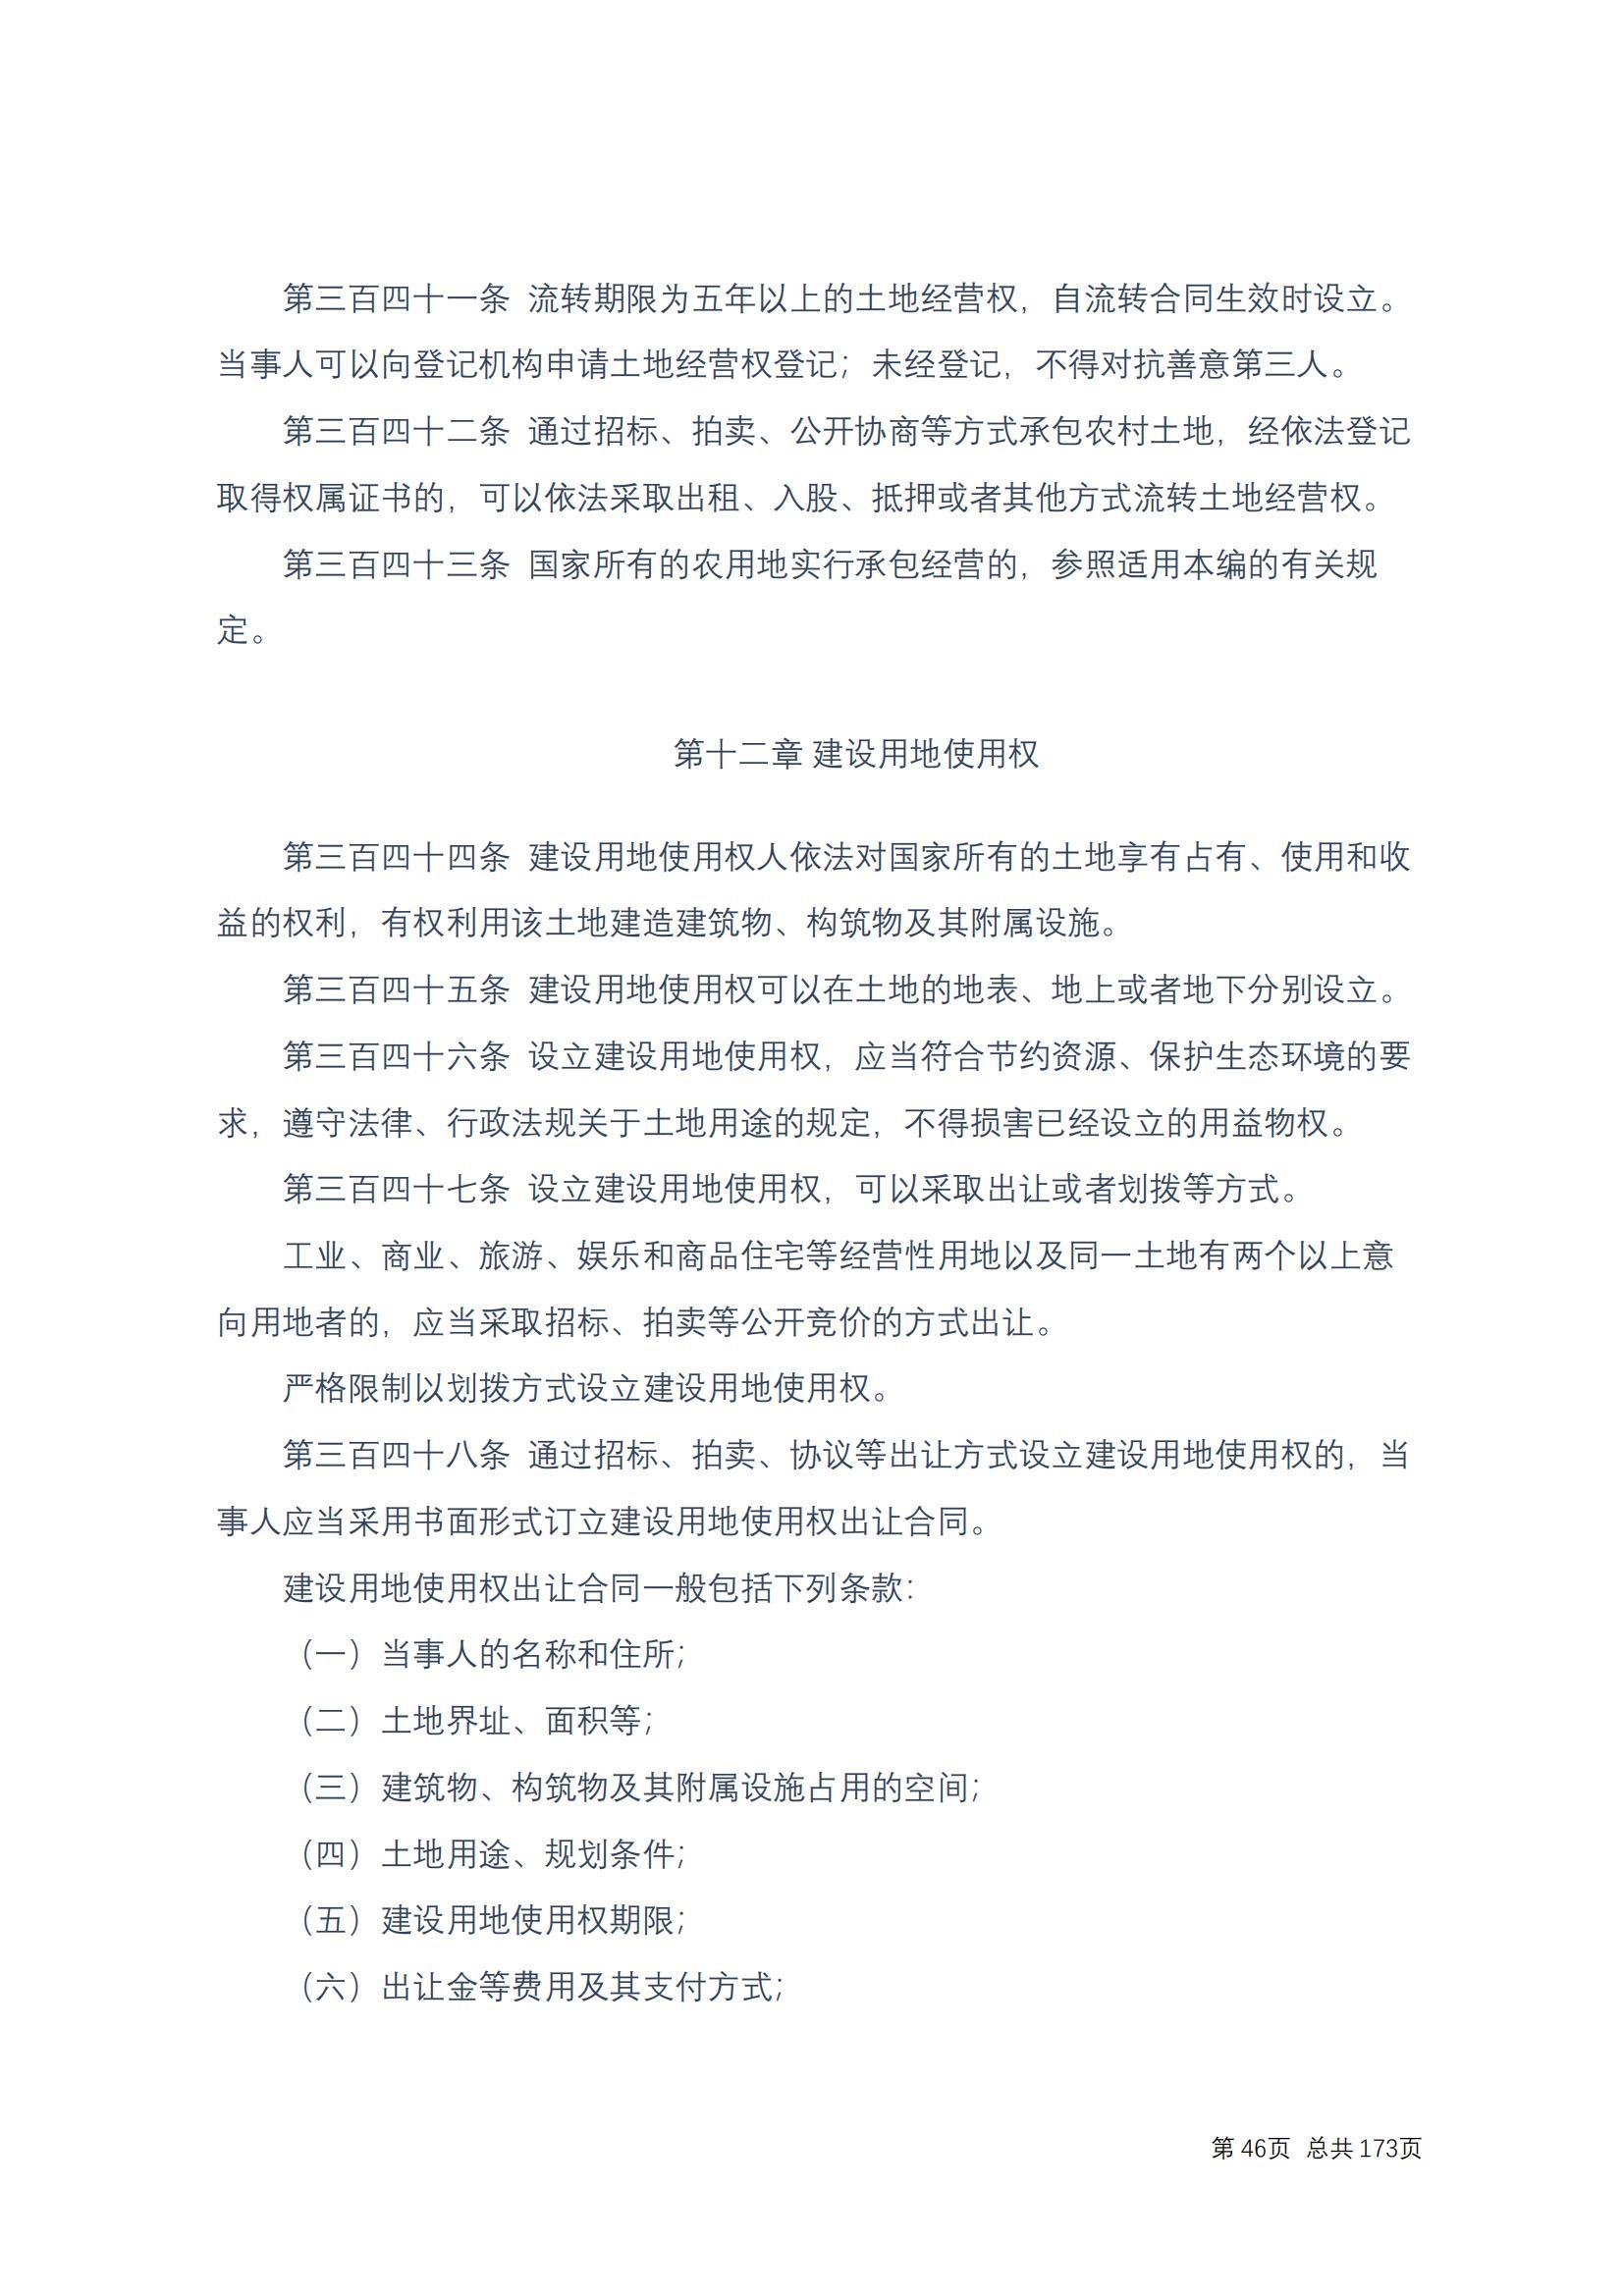 中华人民共和国民法典 修改过_45